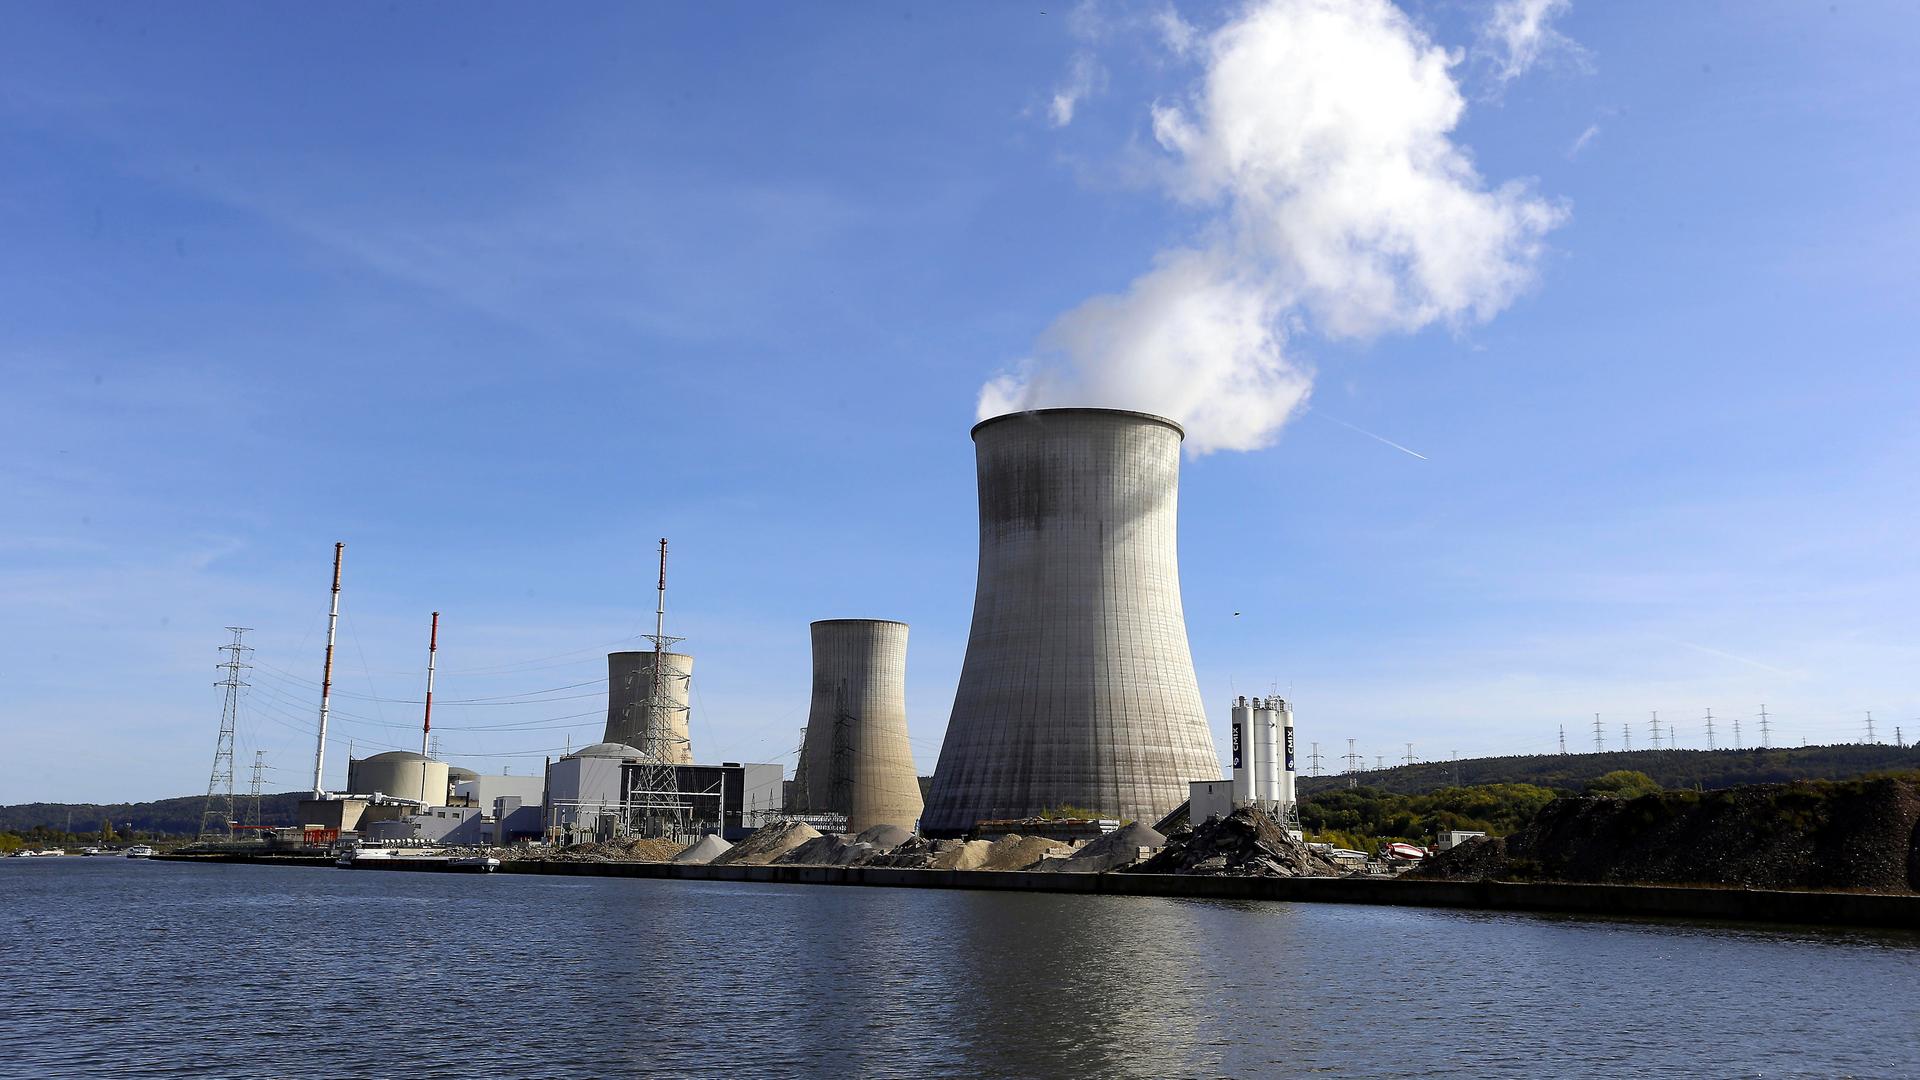 Die drei Kühl-Türme von dem belgischen Atom-Kraft-Werk Tihange stehen am Ufer von dem Fluss Maas. Aus dem rechten Kühl-Turm steigt weißer Dampf in den blauen Himmel.